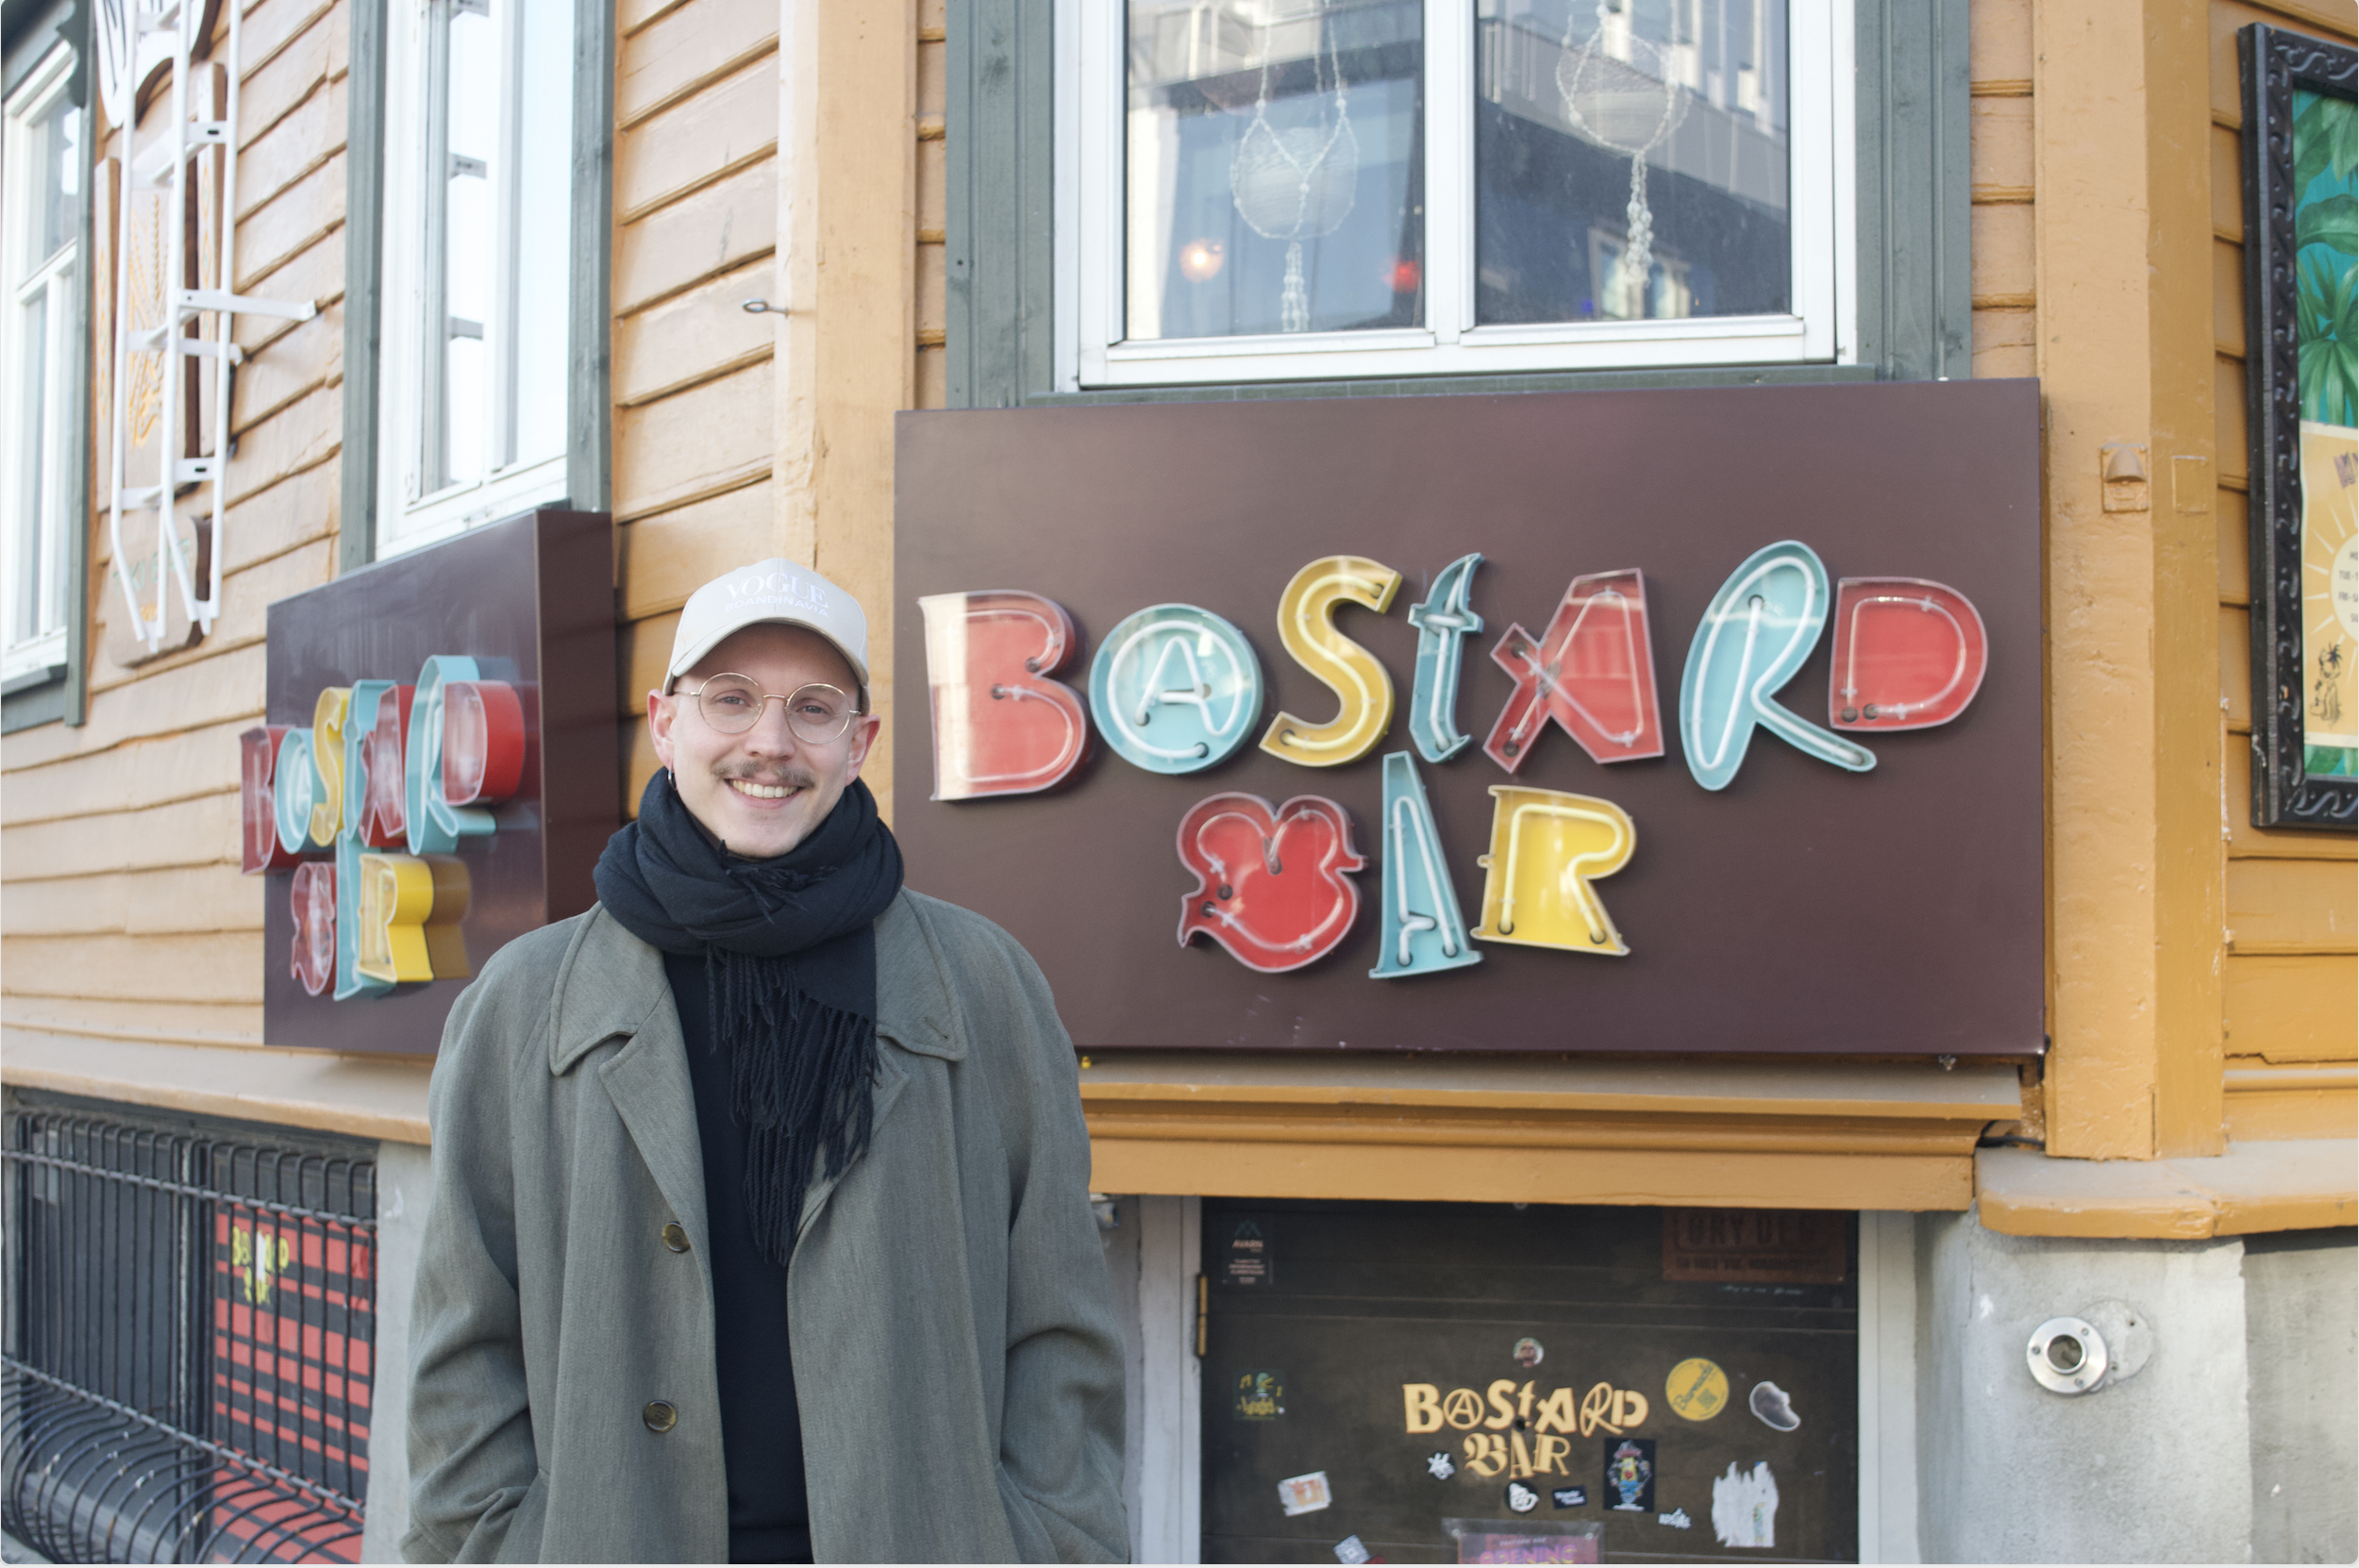 Festivalsjef for poesifestivalen Brøler og bris i Tromsø, William Mørch. (Foto: Presse.)